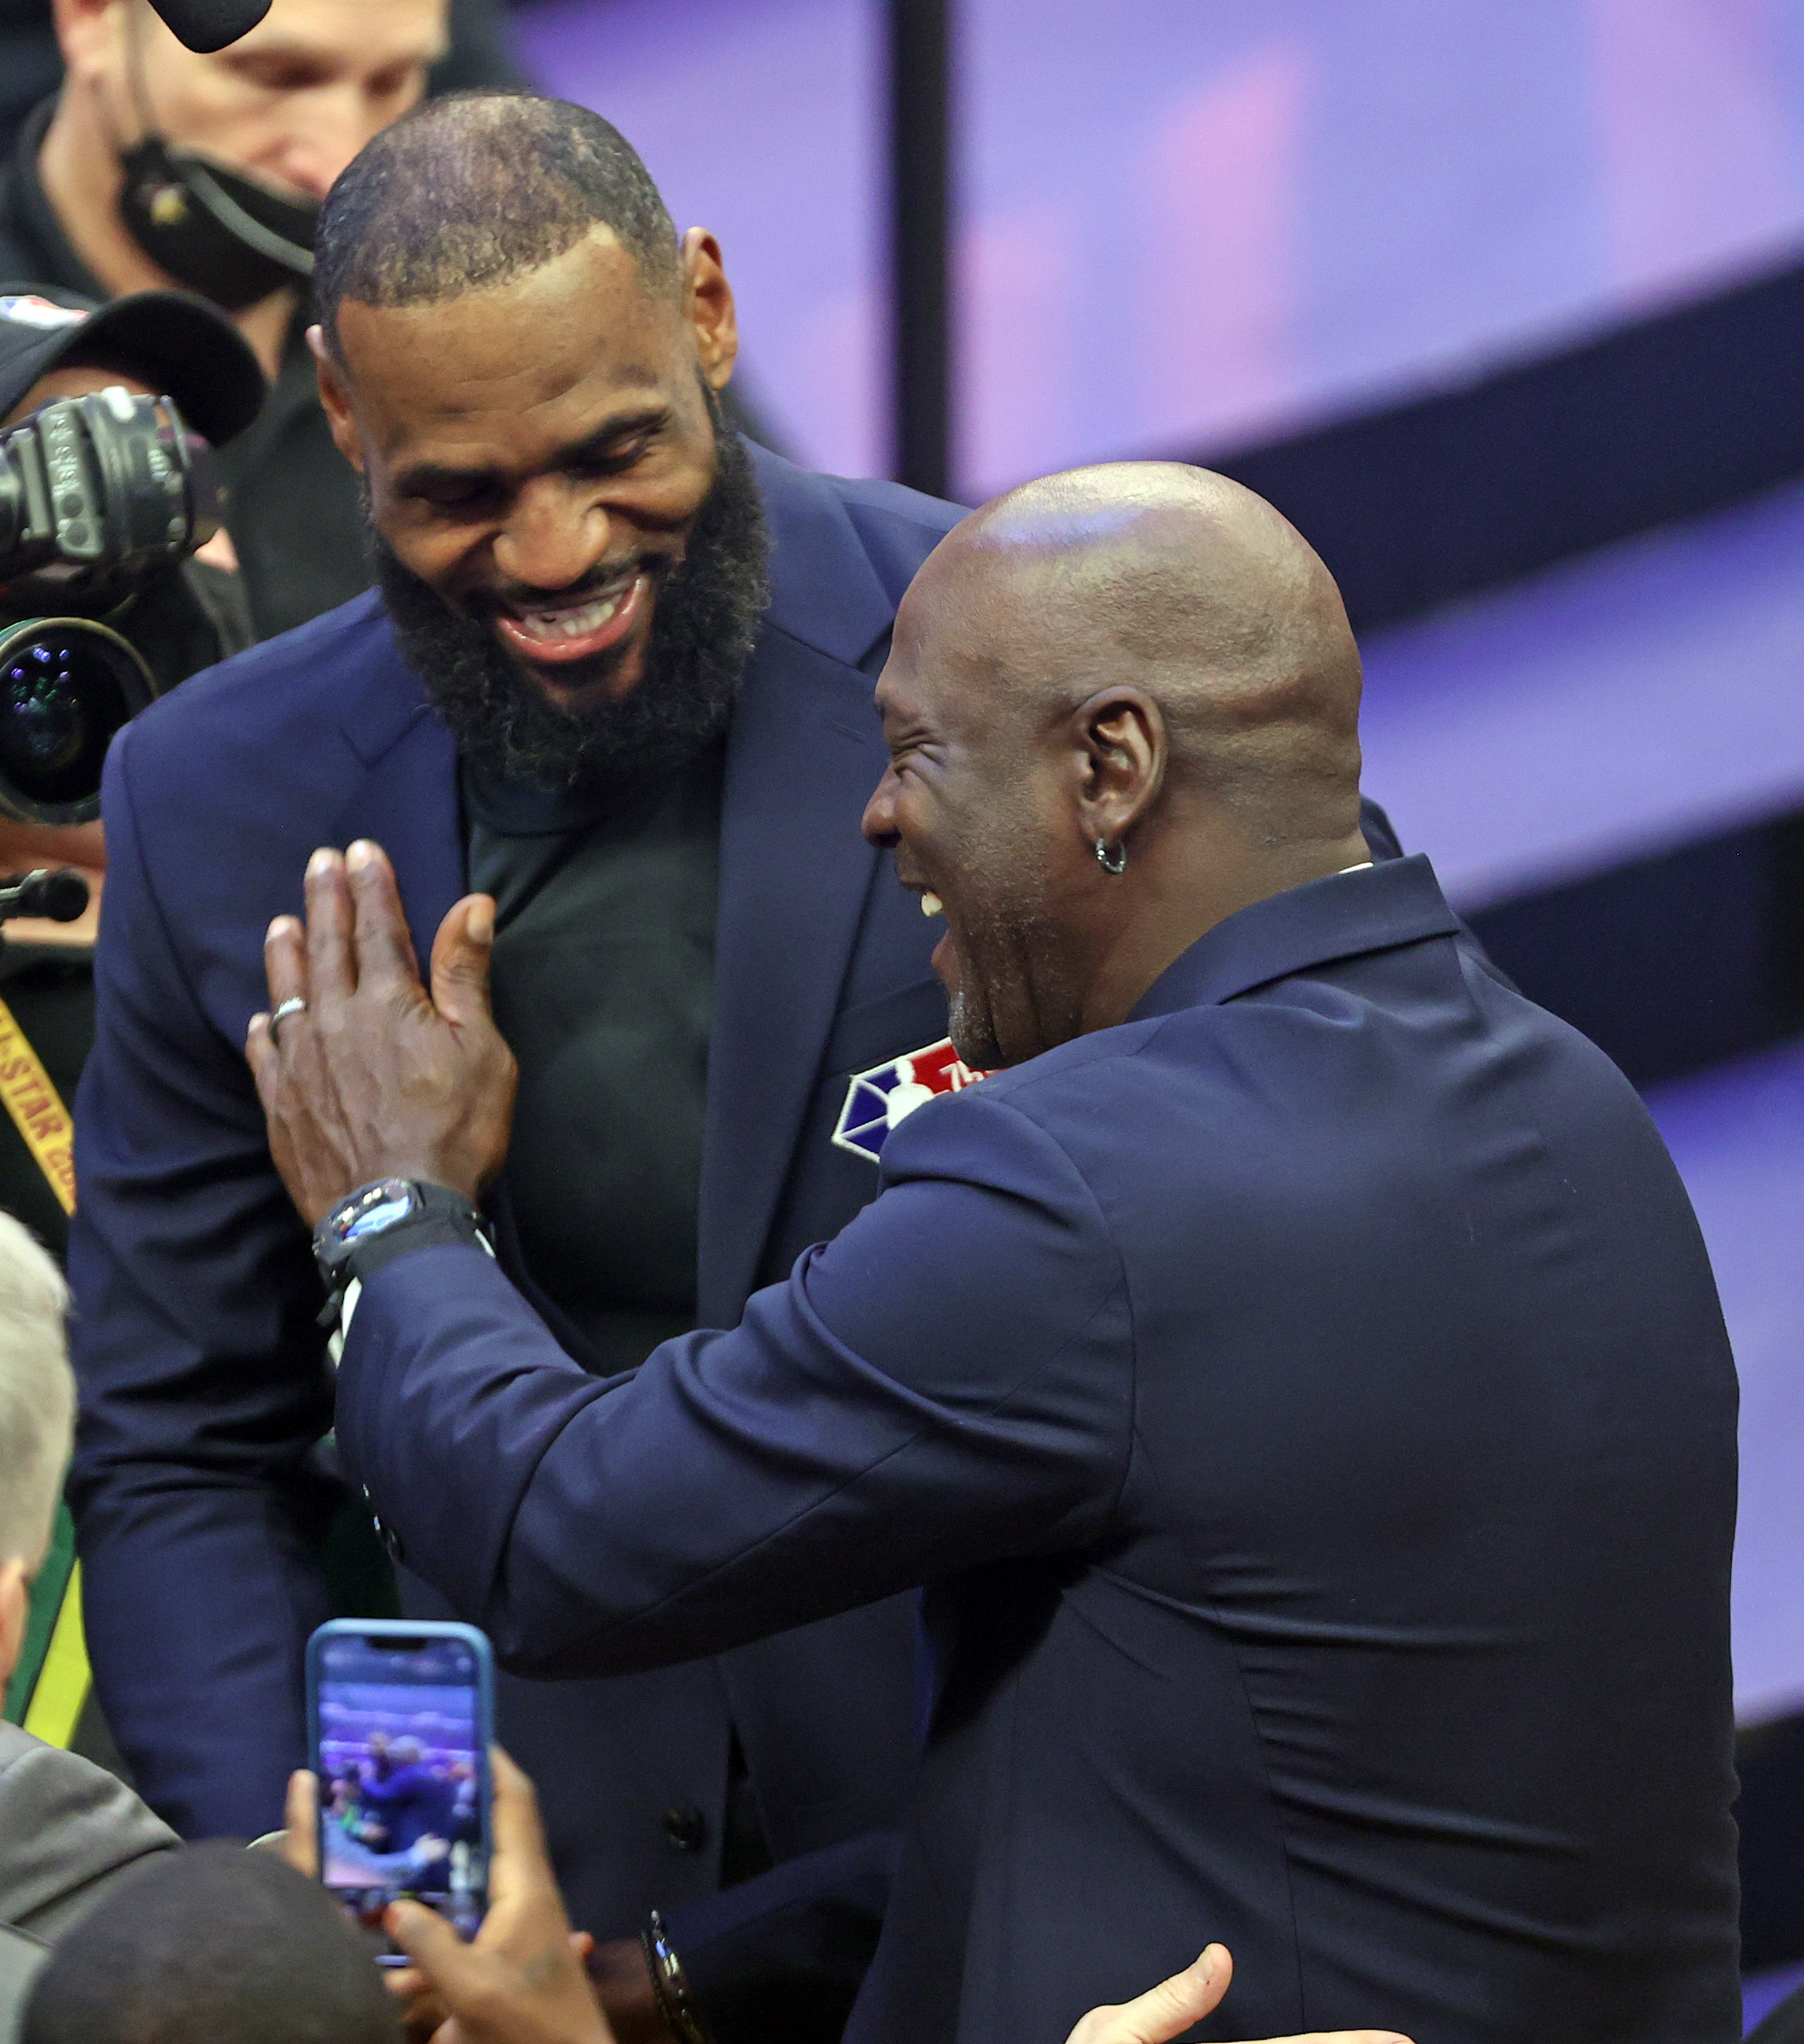 NBA All-Star 2022: LeBron's game-winner and hug with Michael